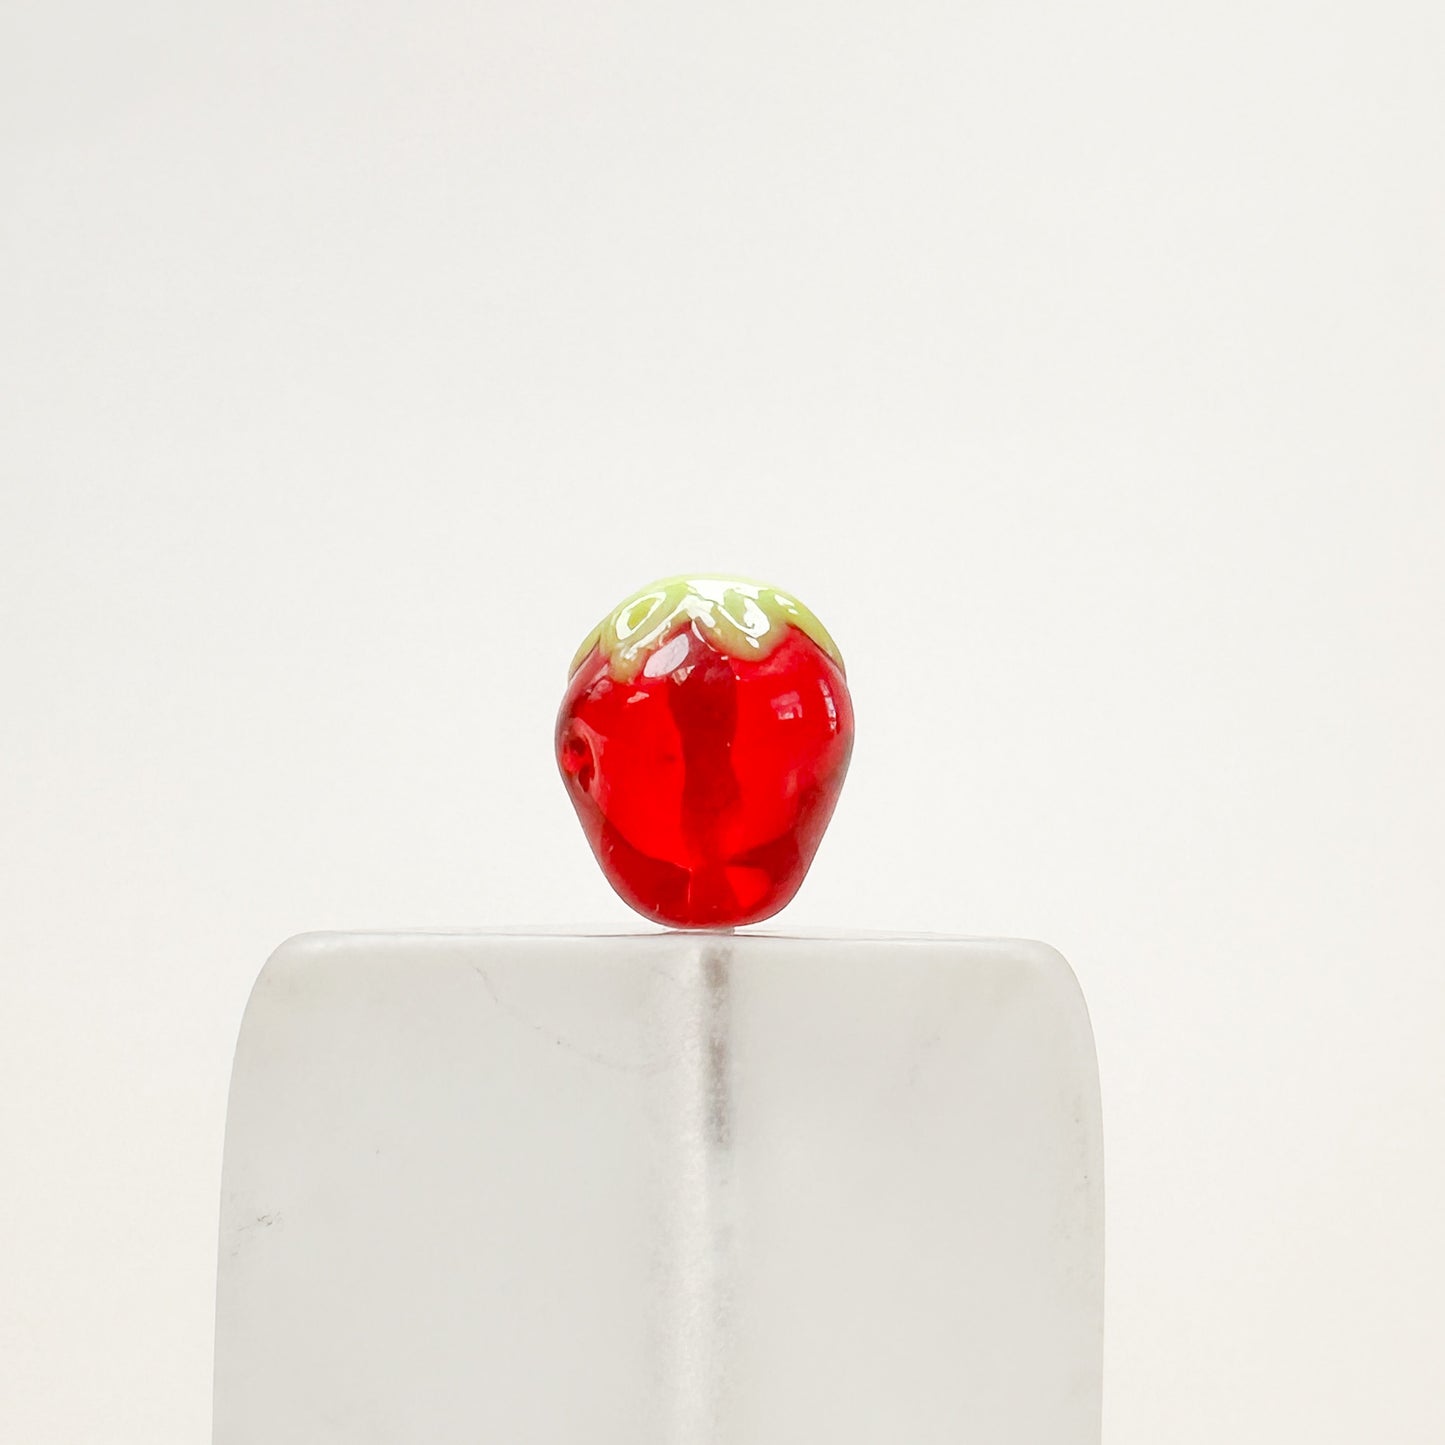 Chibi Handmade Glass Beads - Strawberry-The Bead Gallery Honolulu